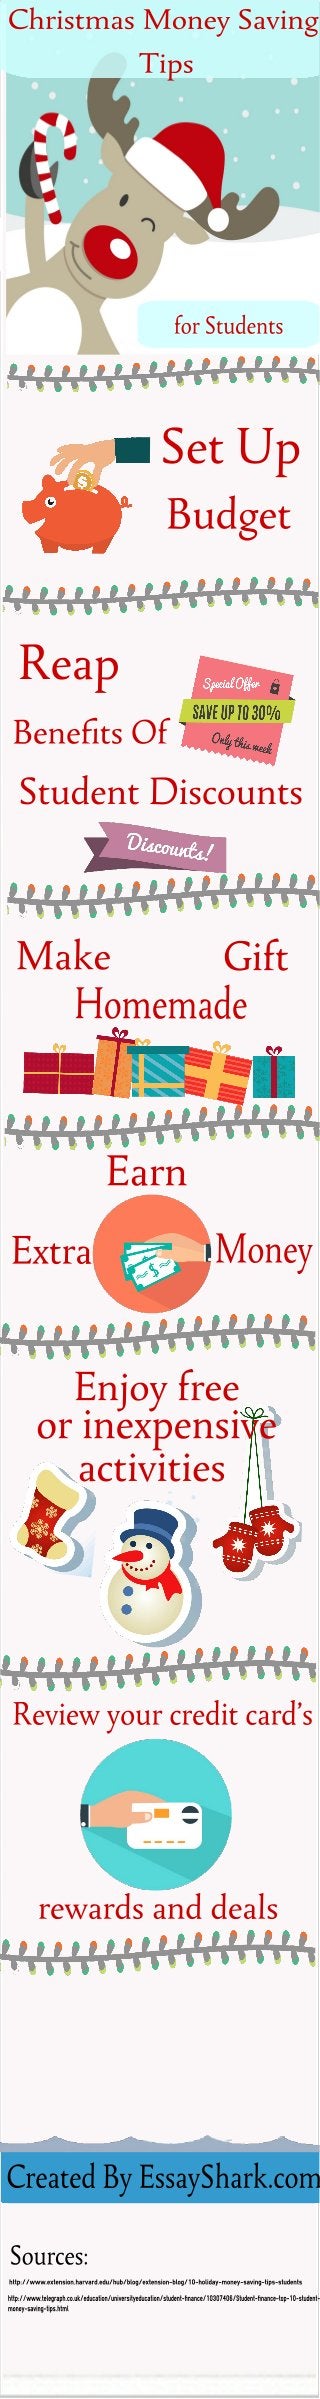 Christmas Money Saving Tips for Students